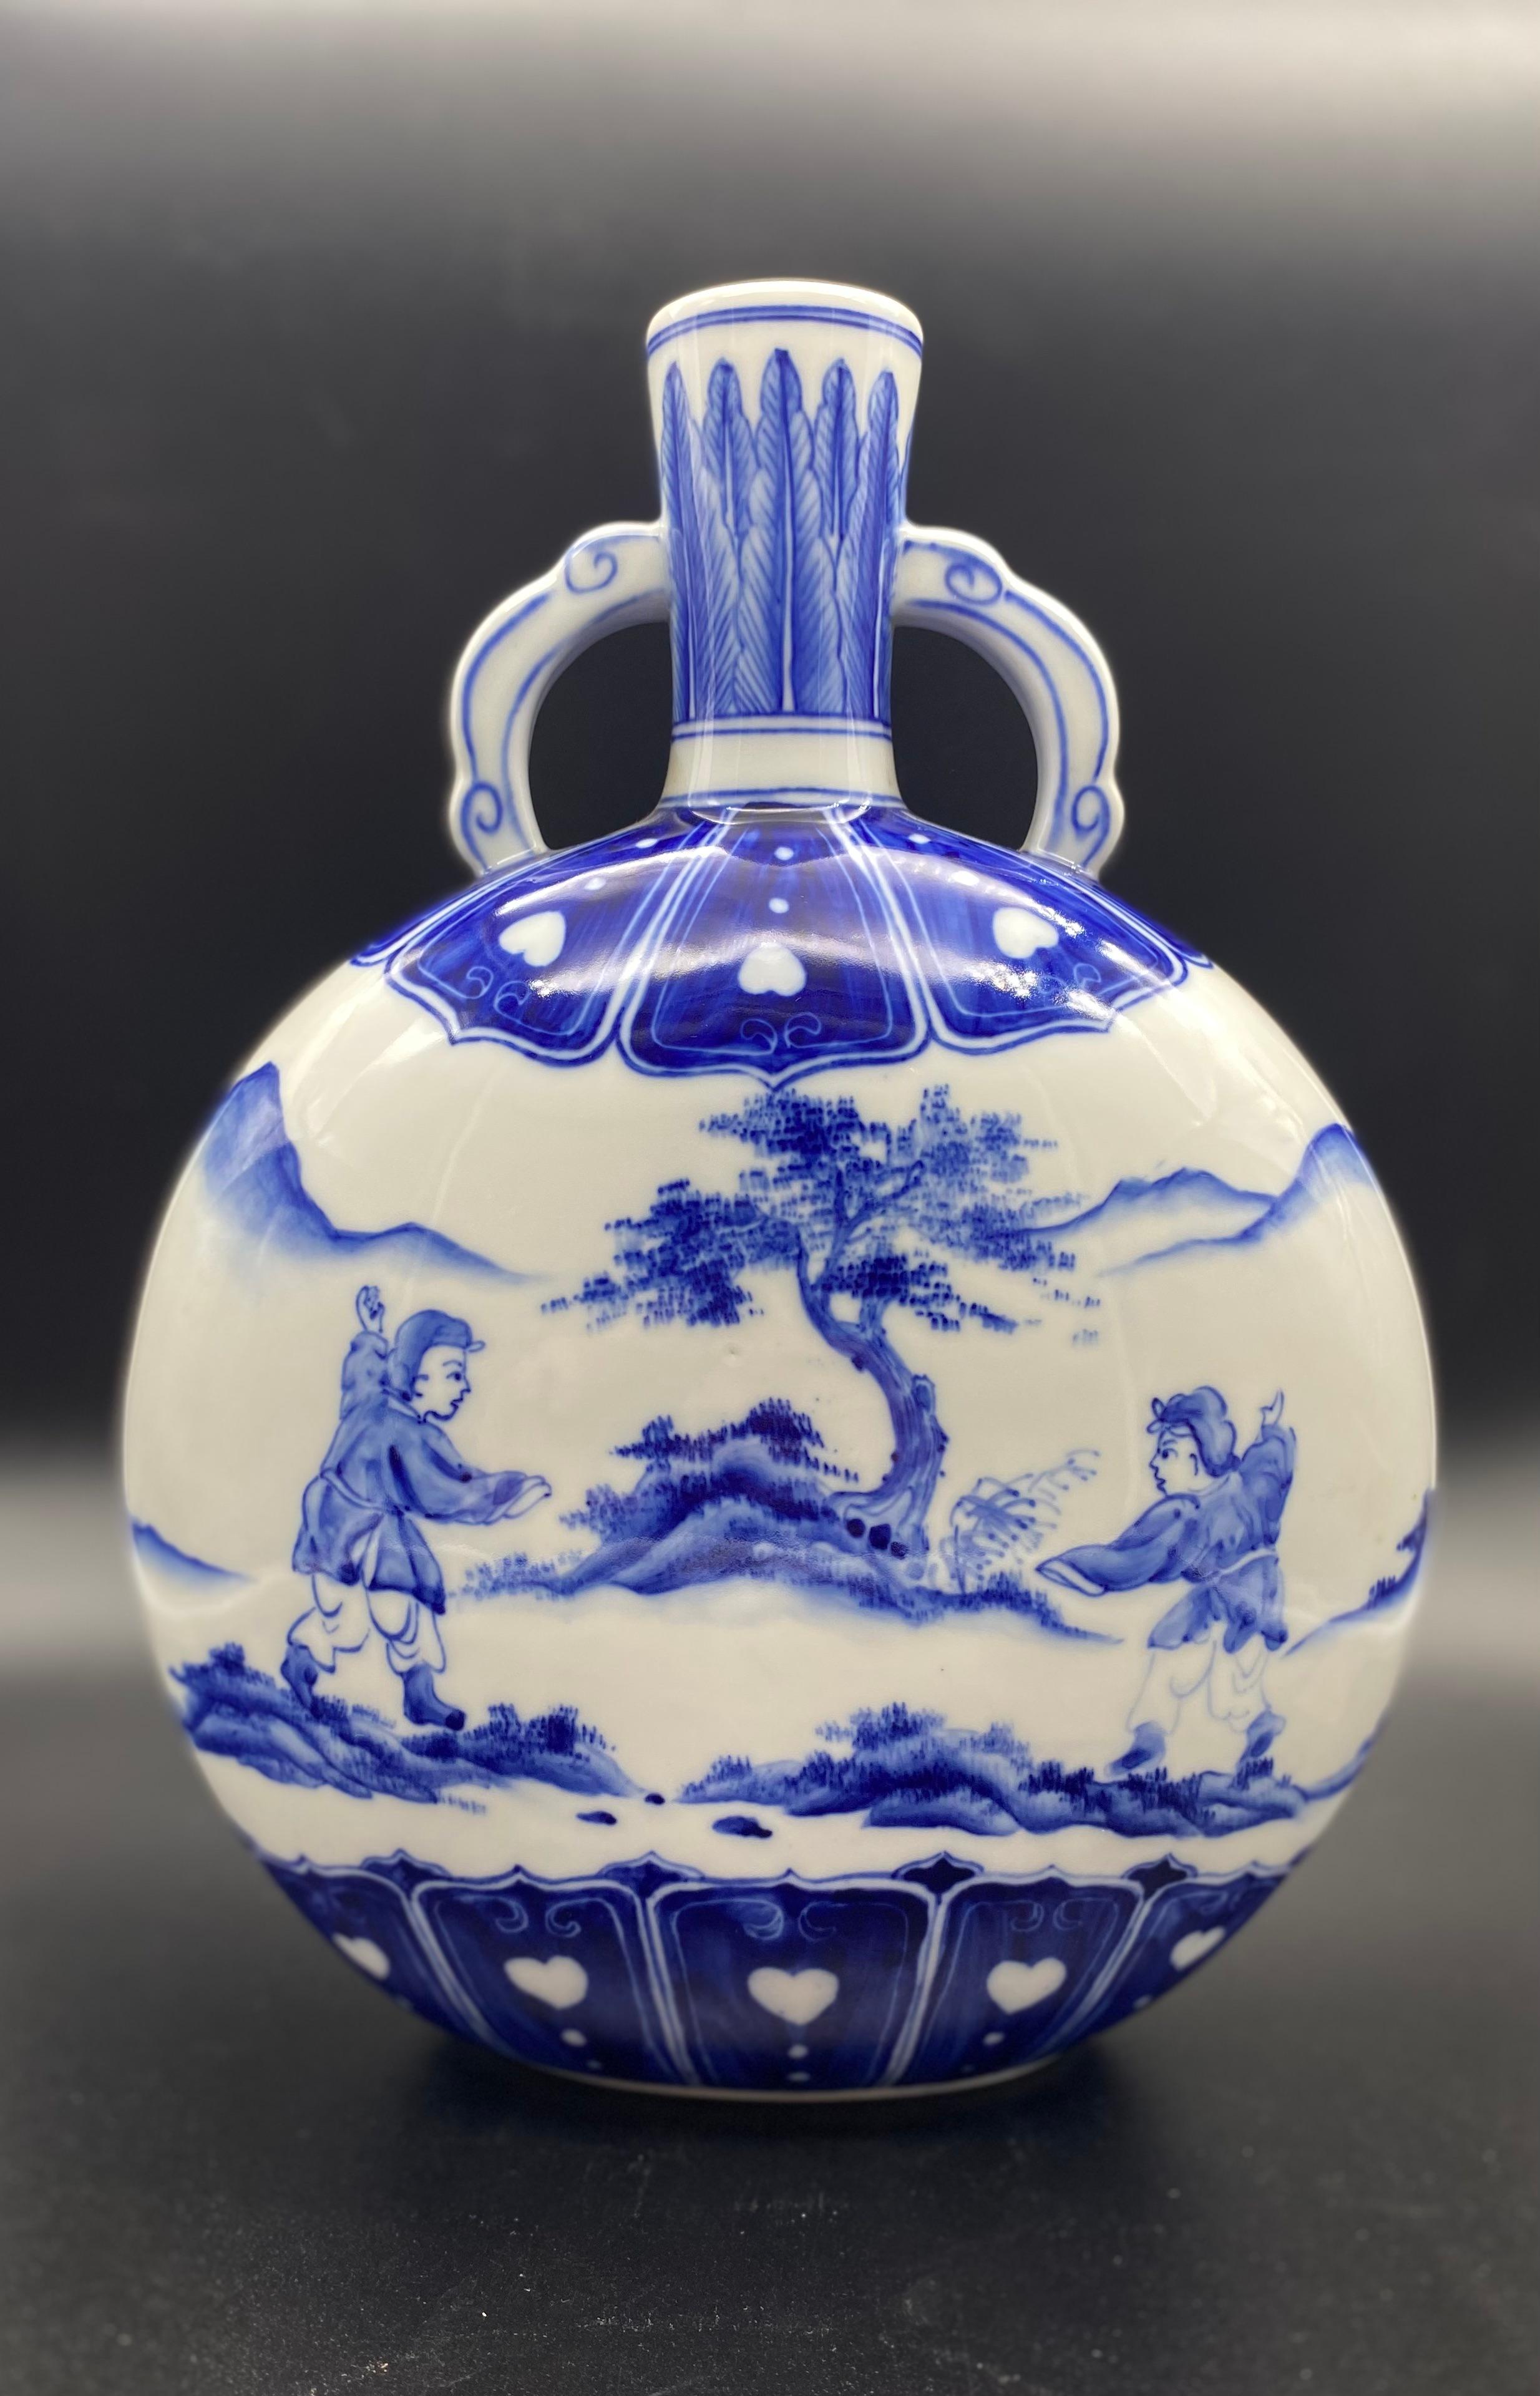 Magnifique vase gourde chinois en porcelaine blanche et bleue.
Porcelaine de bonne qualité pour ce joli objet décoratif.
Deux décorations de chaque côté du vase.
Les décorations représentent deux personnages dans un paysage montagneux avec un arbre